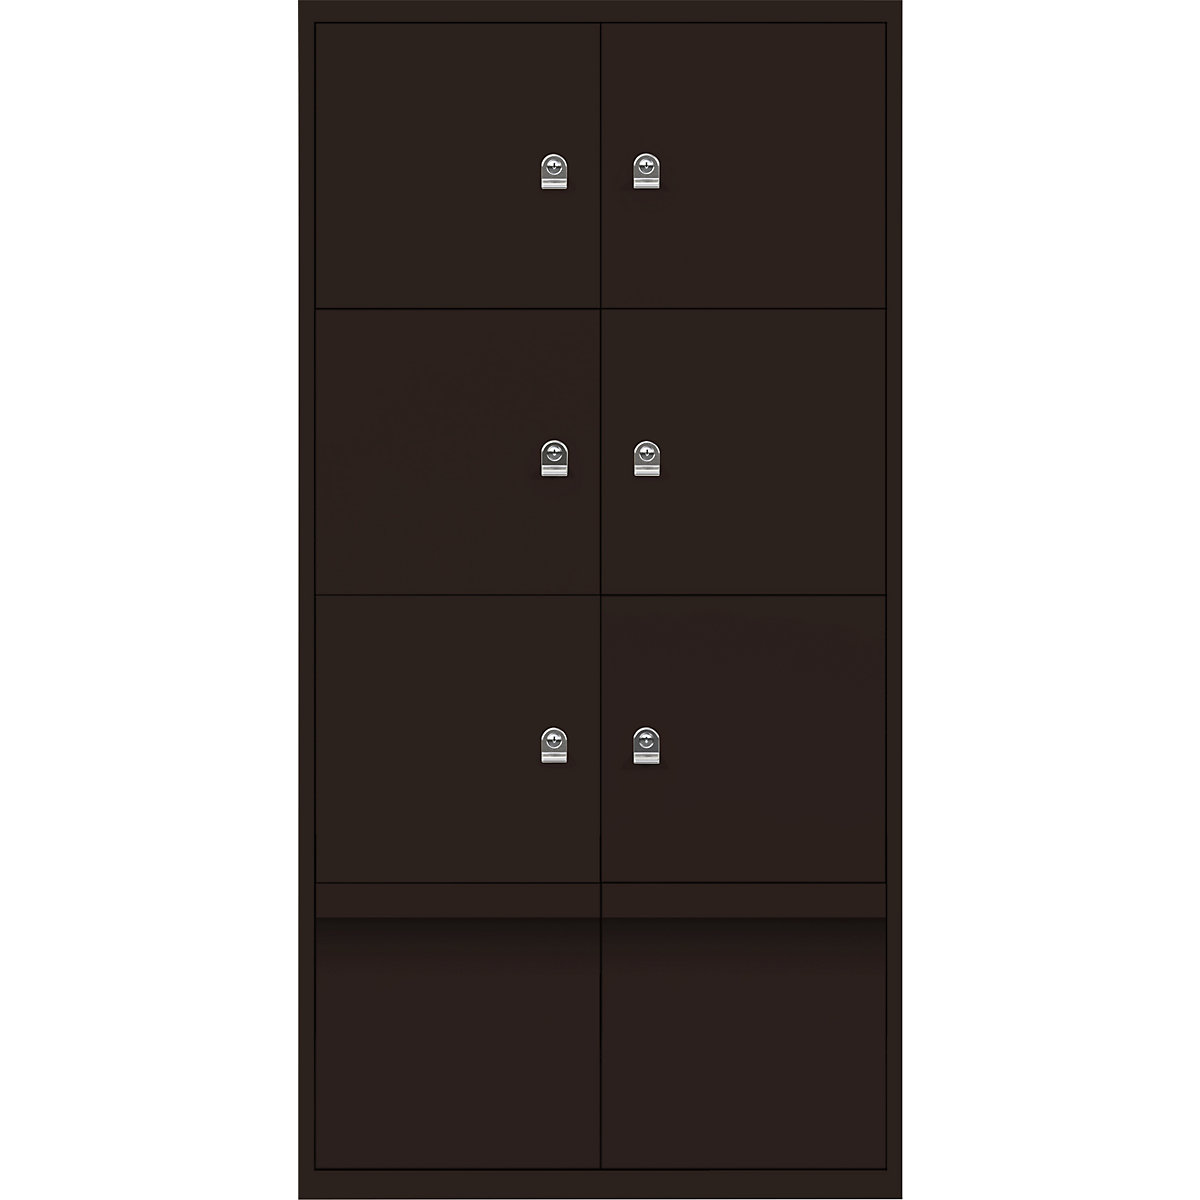 Omara s predelki z zaklepanjem LateralFile™ – BISLEY, 6 predelkov z zaklepanjem in 2 predala, višina po 375 mm, rjave barve-23